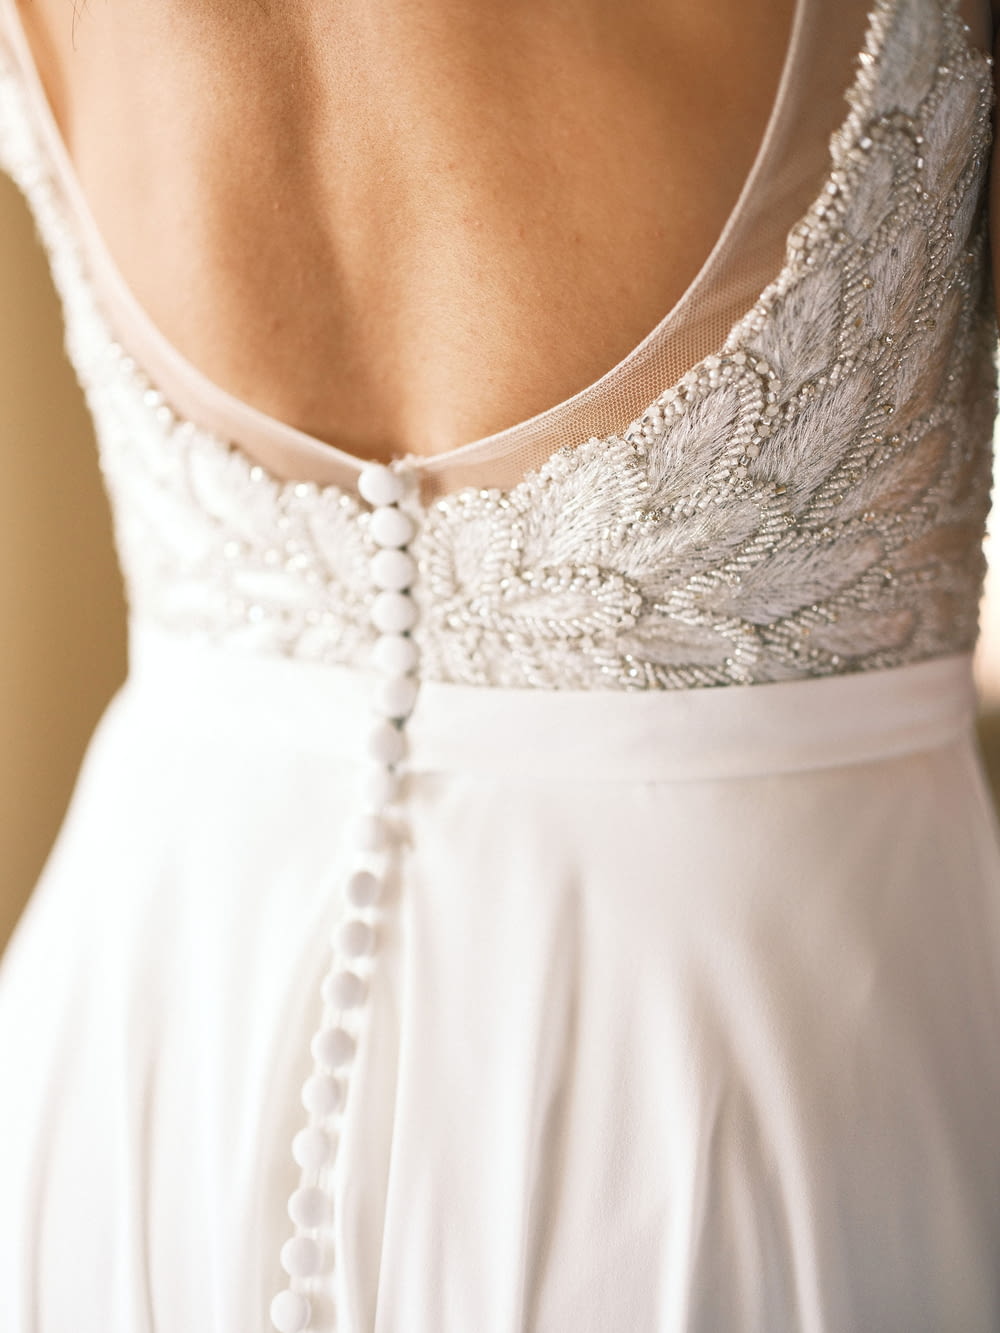 a person wearing a white dress